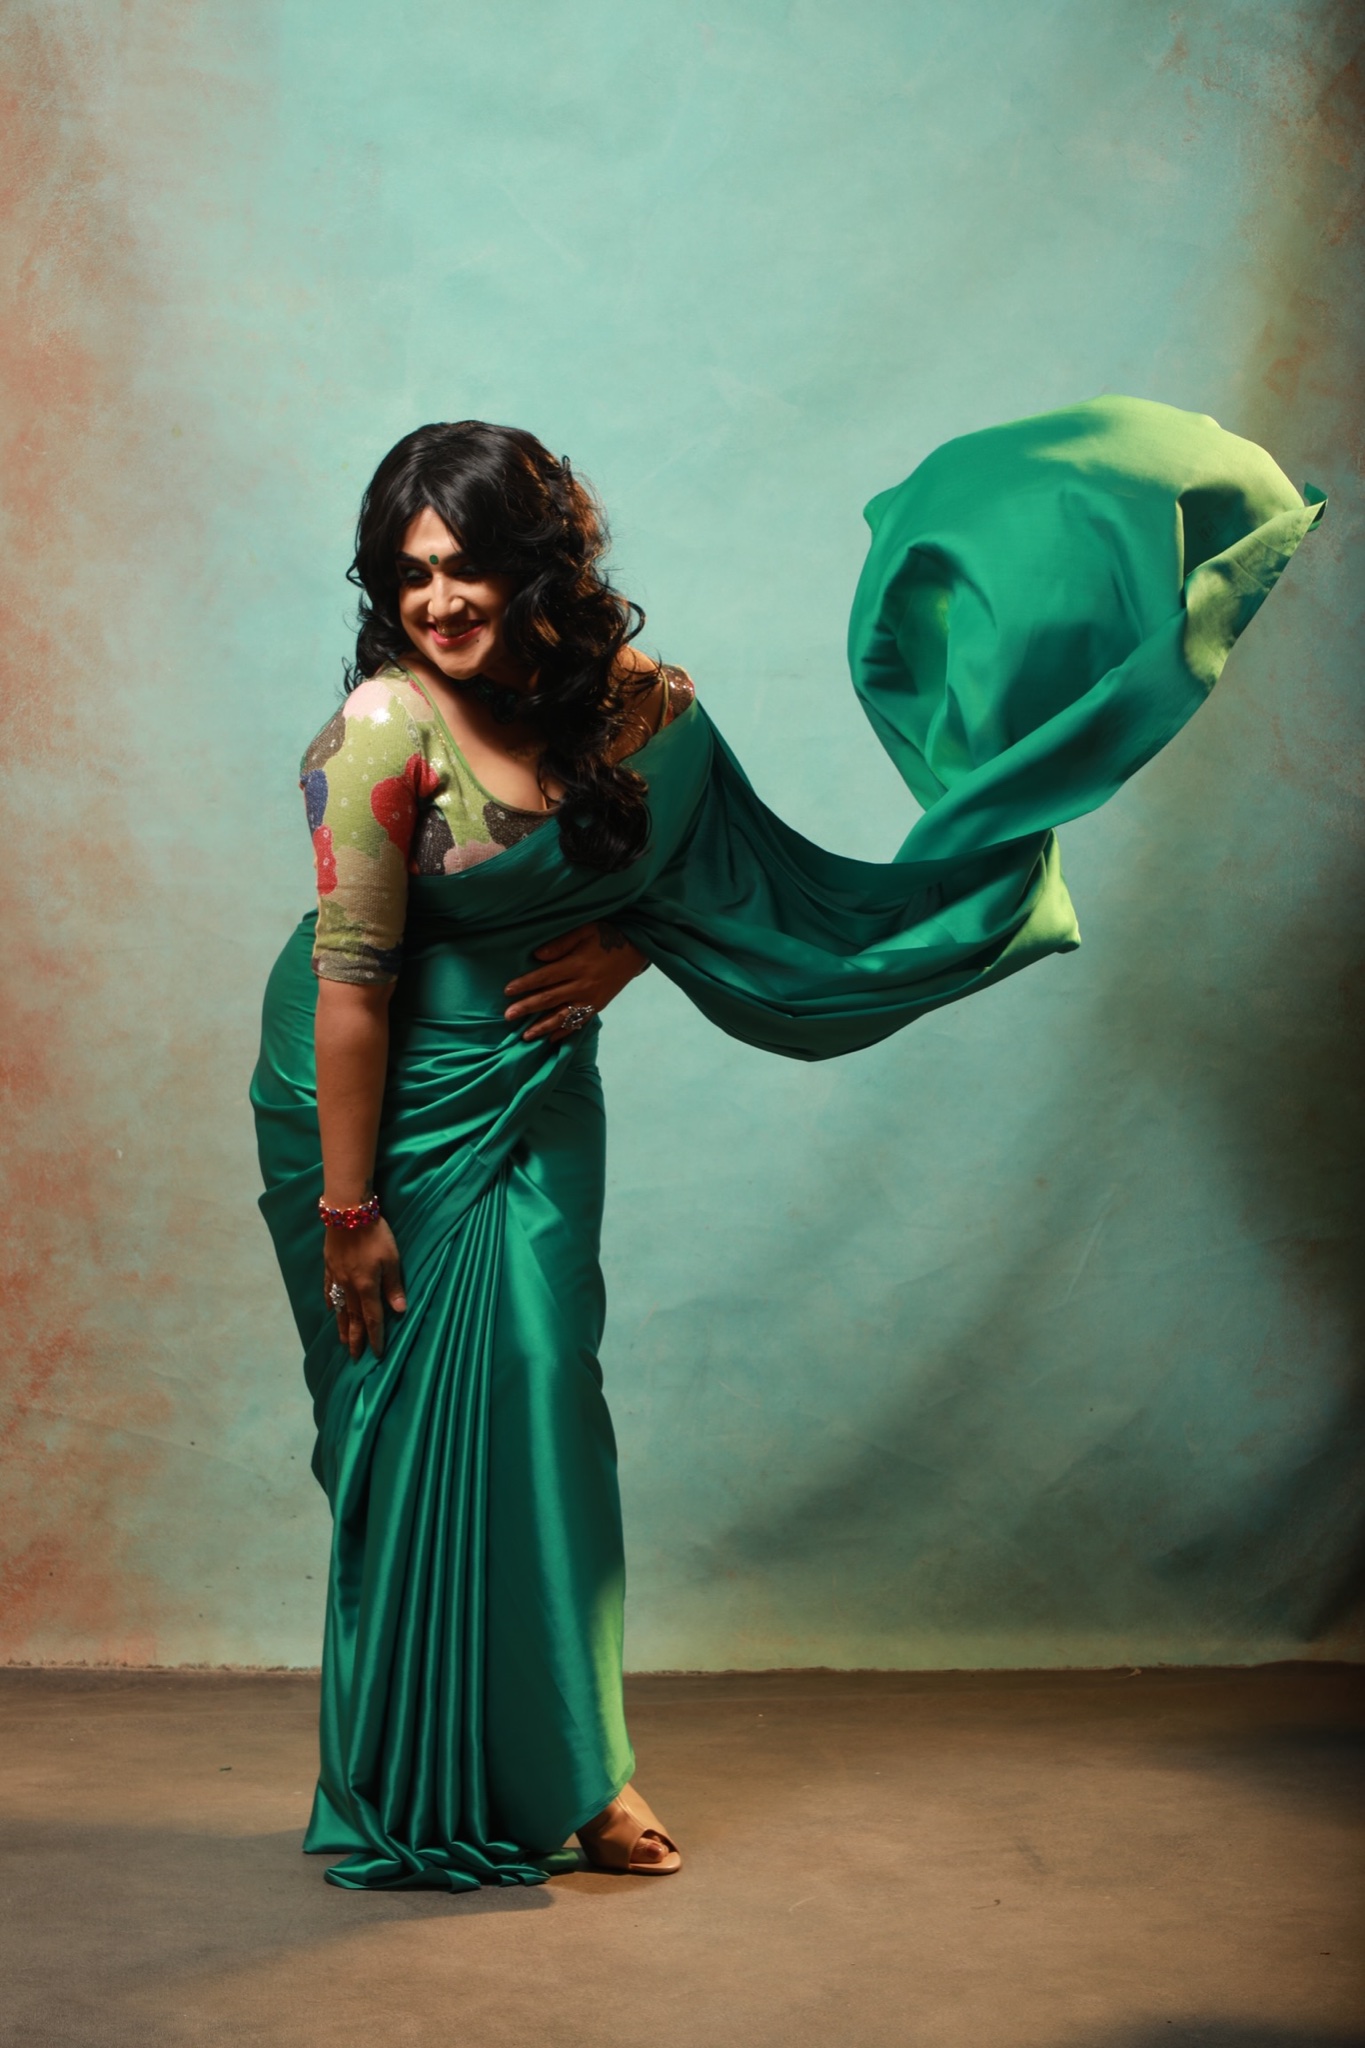  நடிகை வனிதா விஜயகுமார் தனது லேட்டஸ்ட் படங்களை சமூக வலைதளங்களில் வெளியிட்டுள்ளார்.